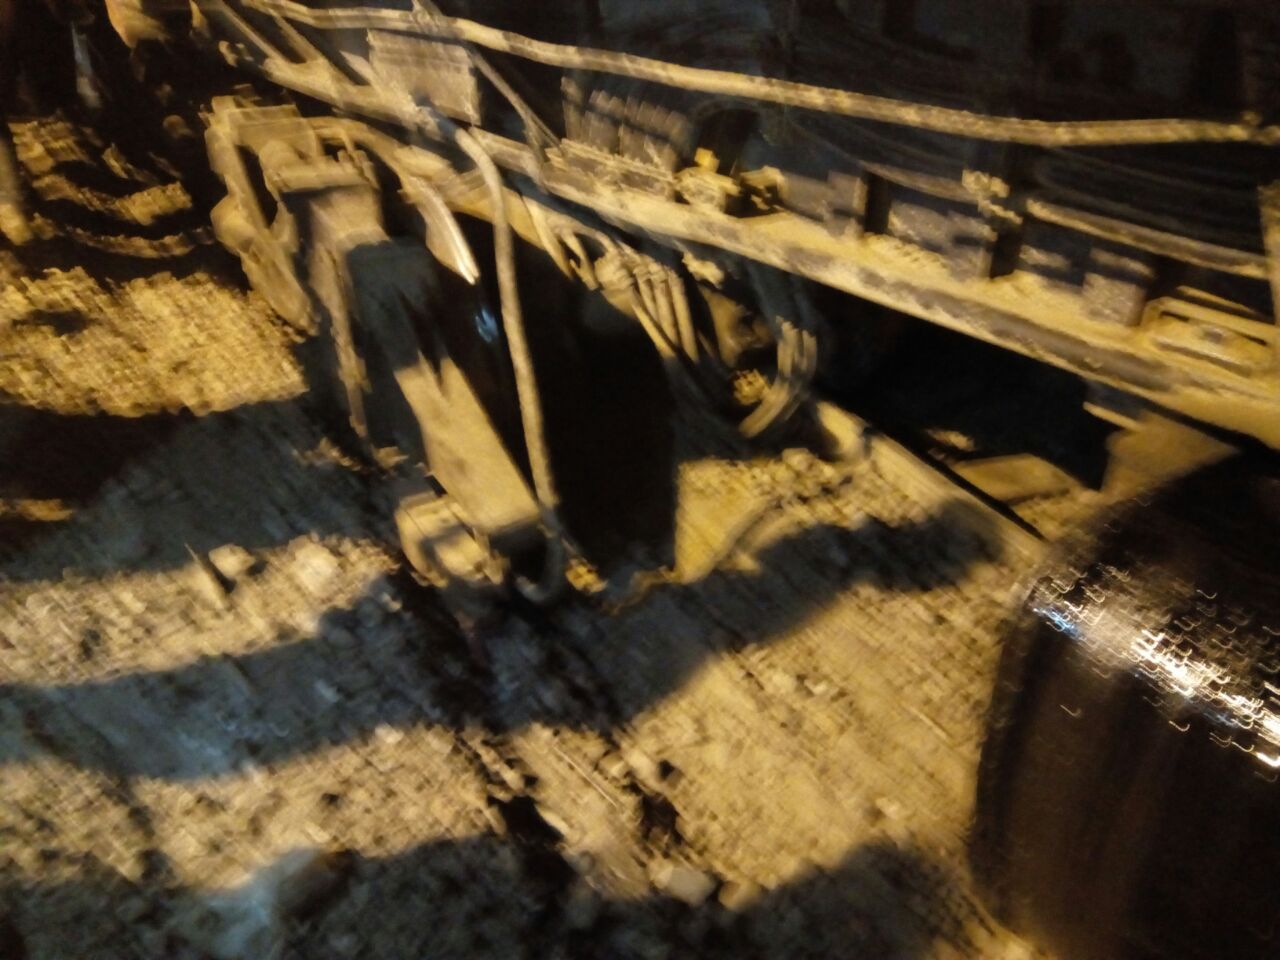 خروج قطبان جرار قطار عن القضبان وتوقف حركة القطارات بكفر الشيخ  (17)_1